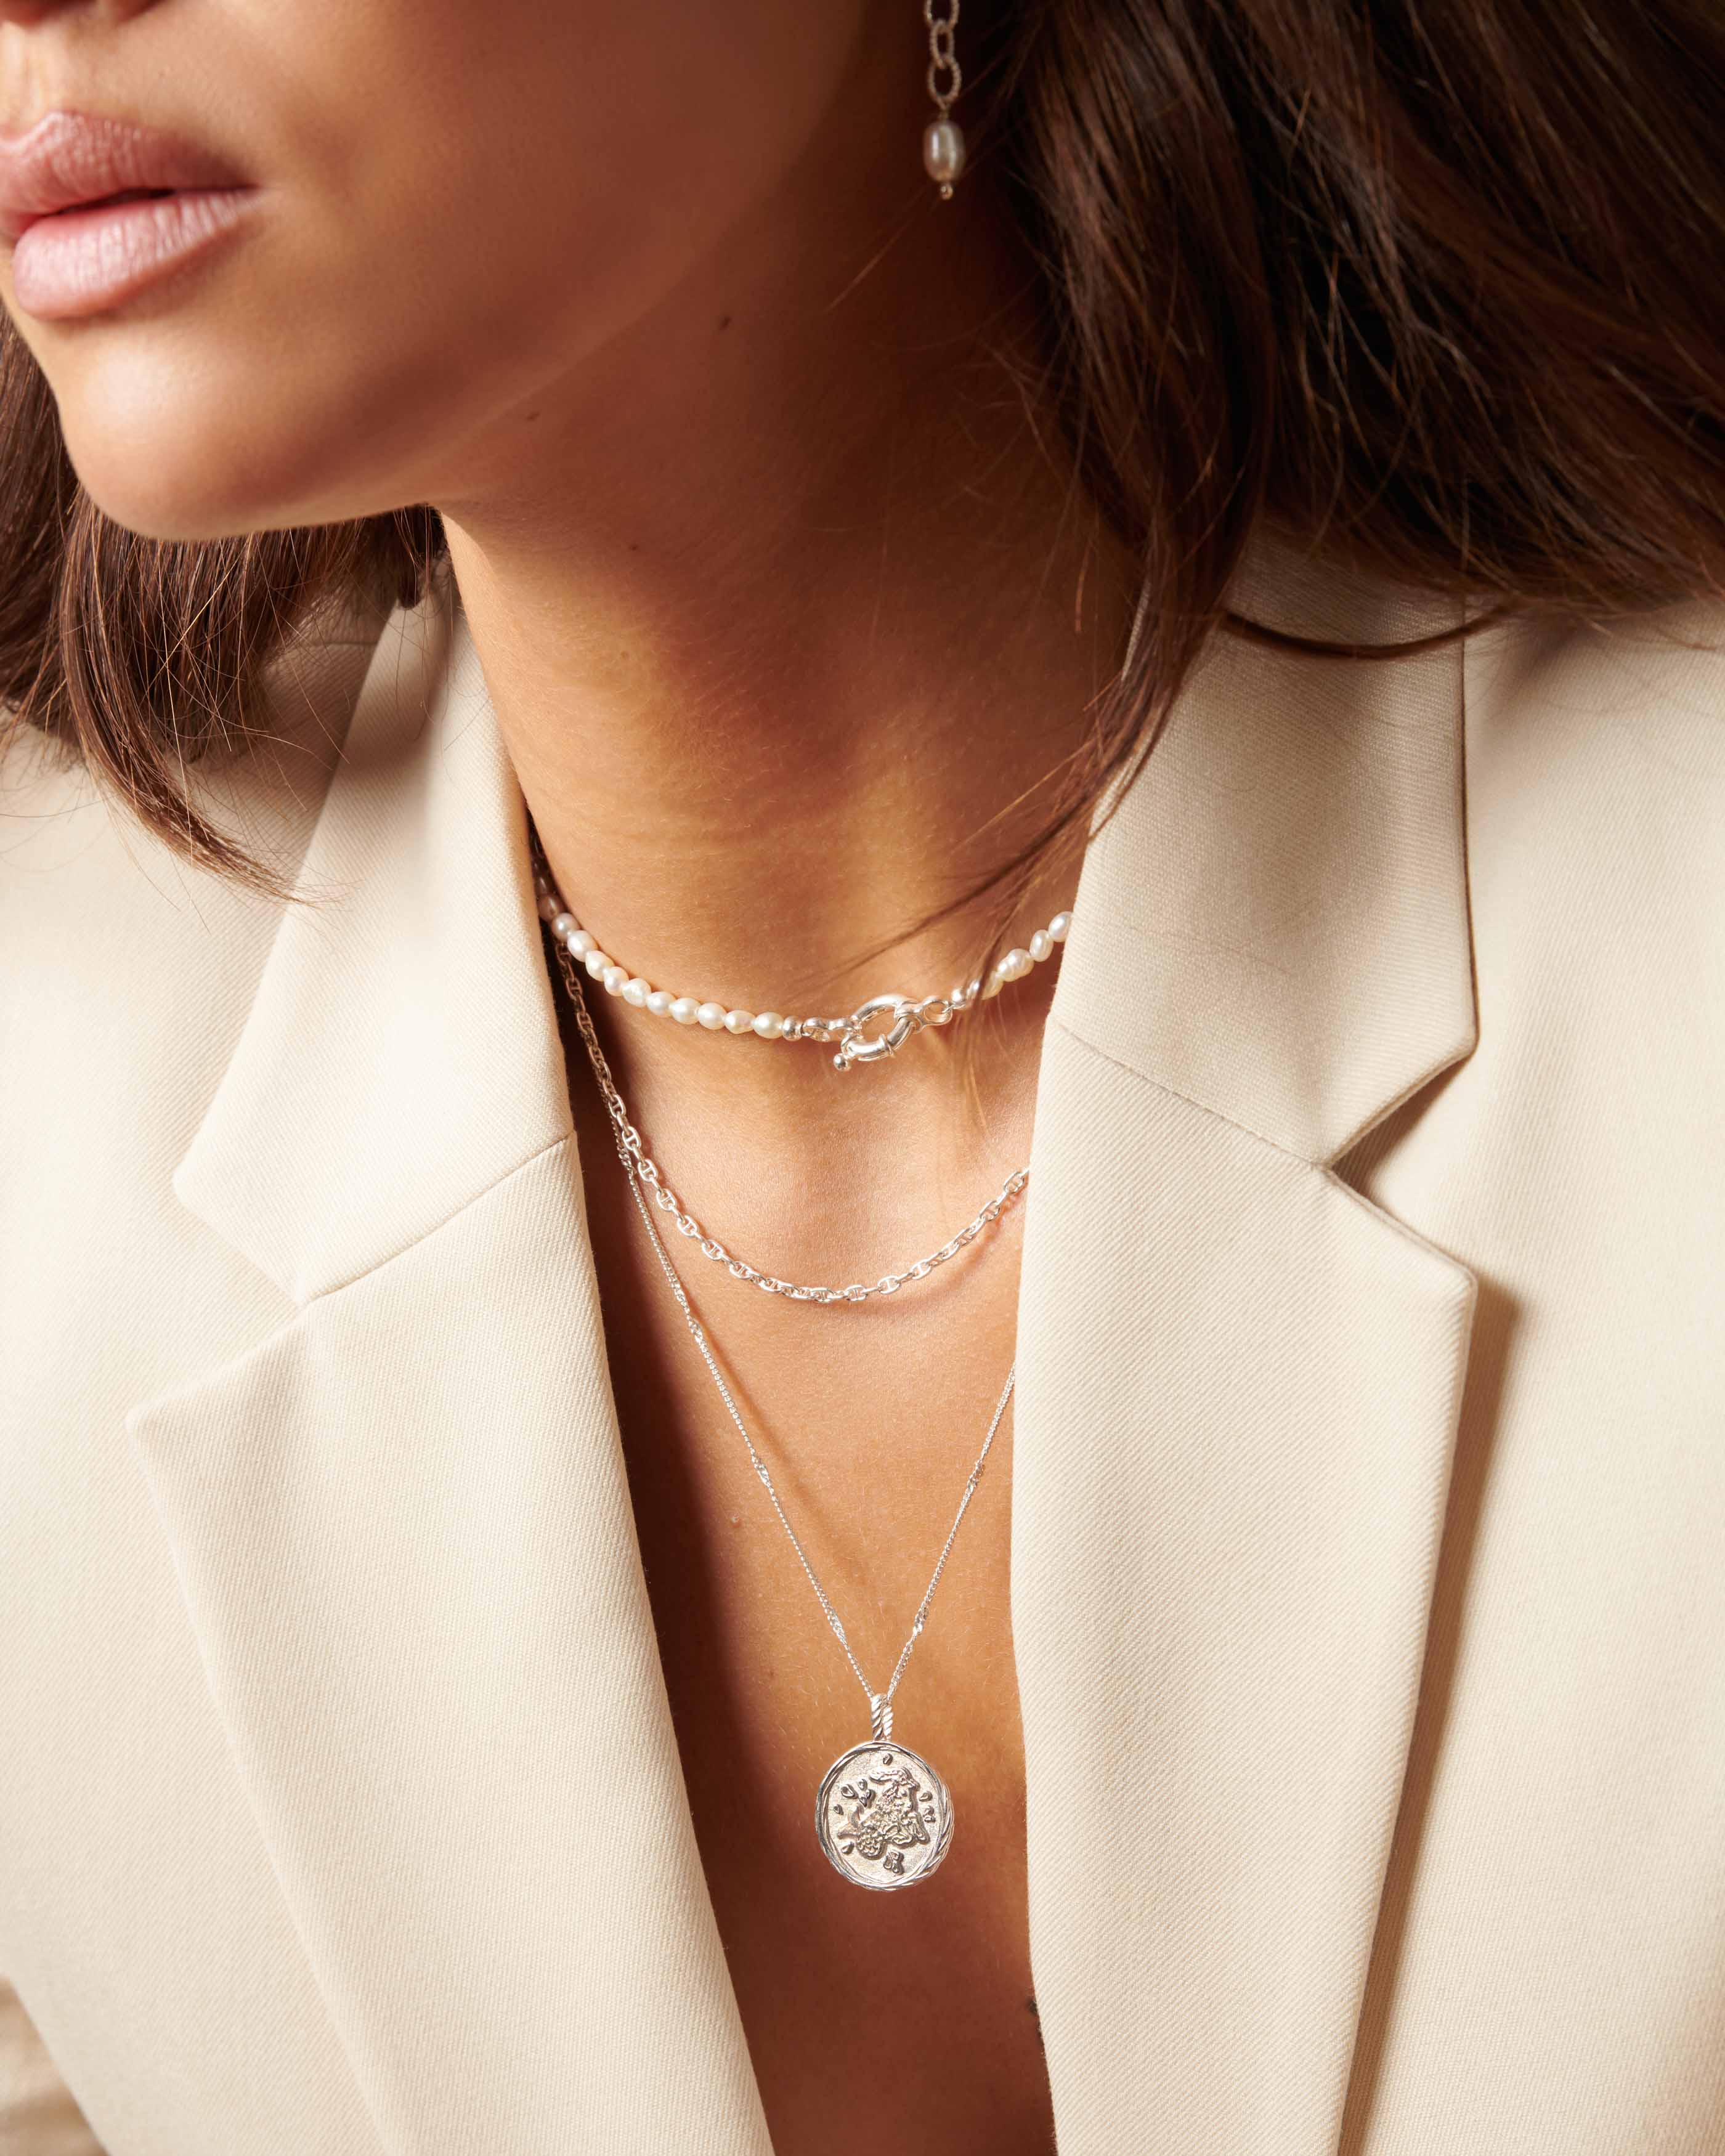 Association de 3 colliers en argent massif 925, composée d'un collier en perles de culture ras de cou, d'une chaîne marine et d'un collier fin avec un pendentif au signe astrologique Capricorne made in France.